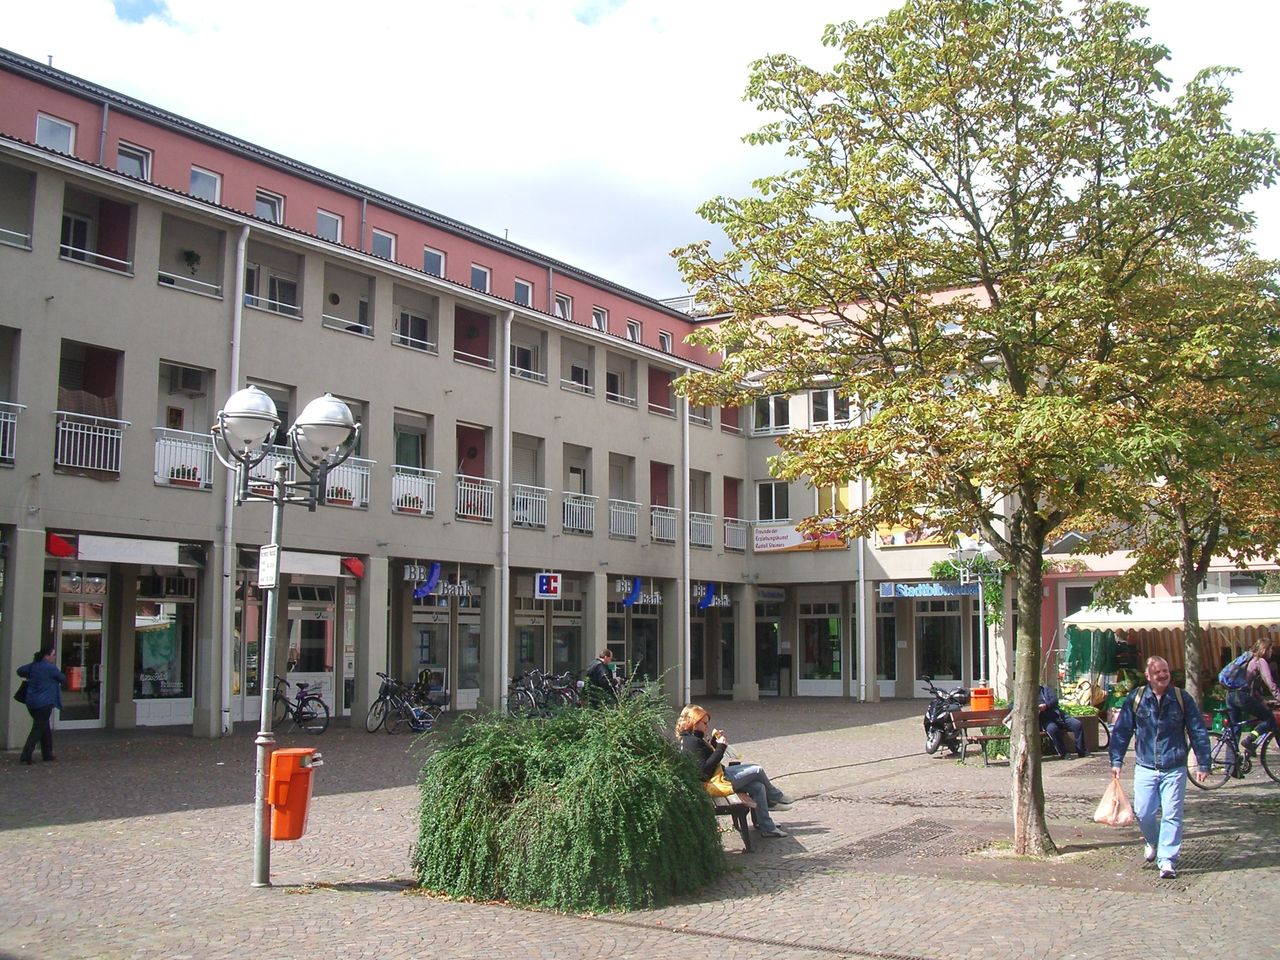 1-room-Apartment in Karlsruhe-Waldstadt